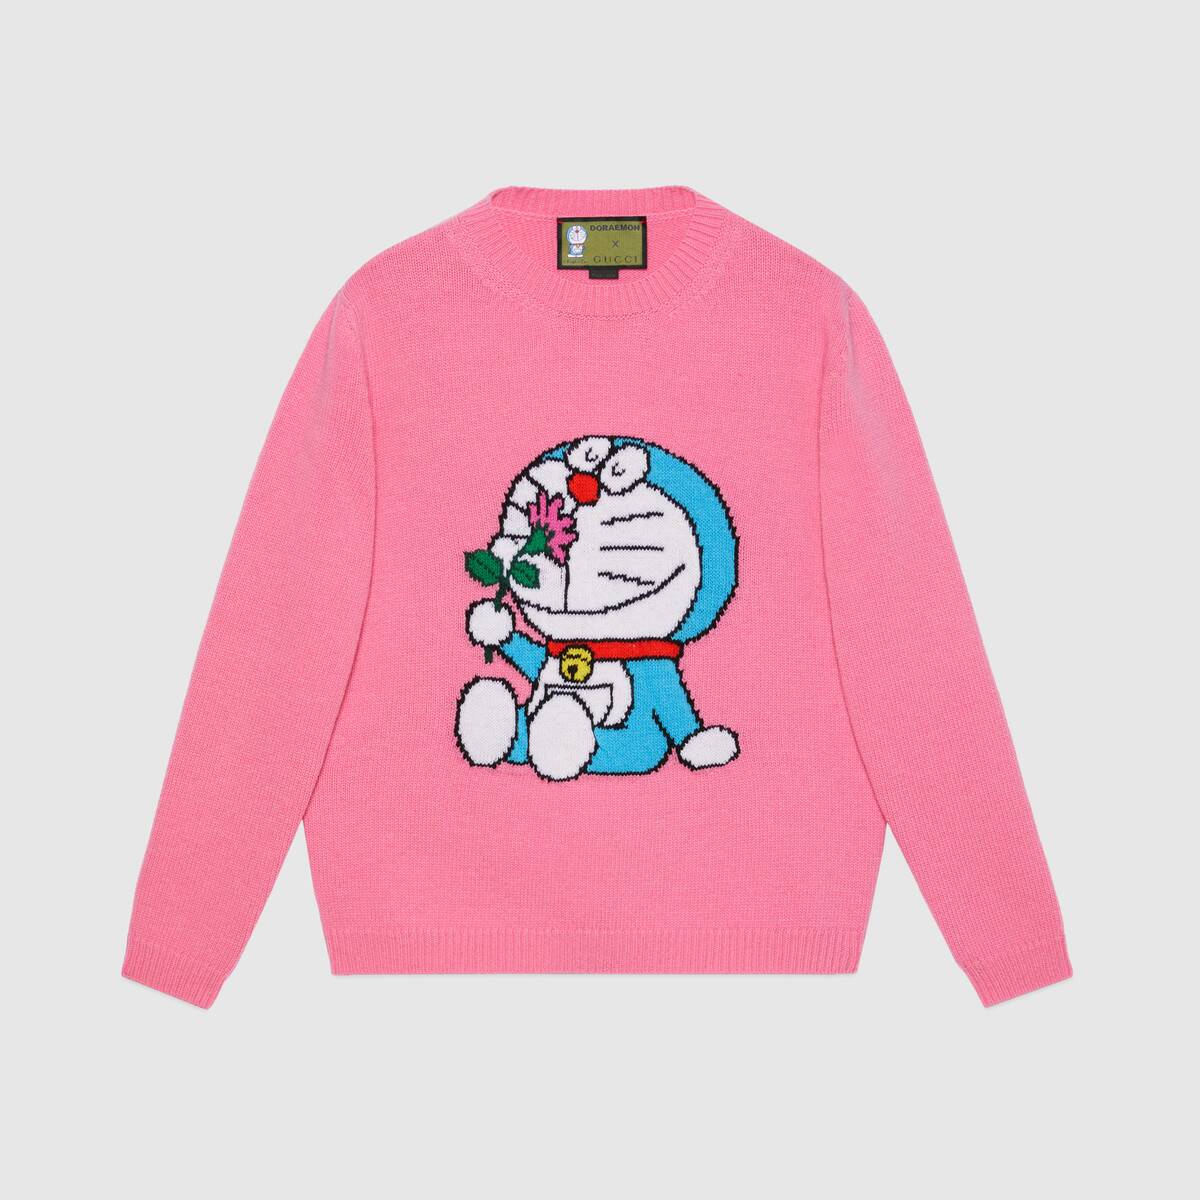 Doraemon' x Gucci - The Luxury Editor